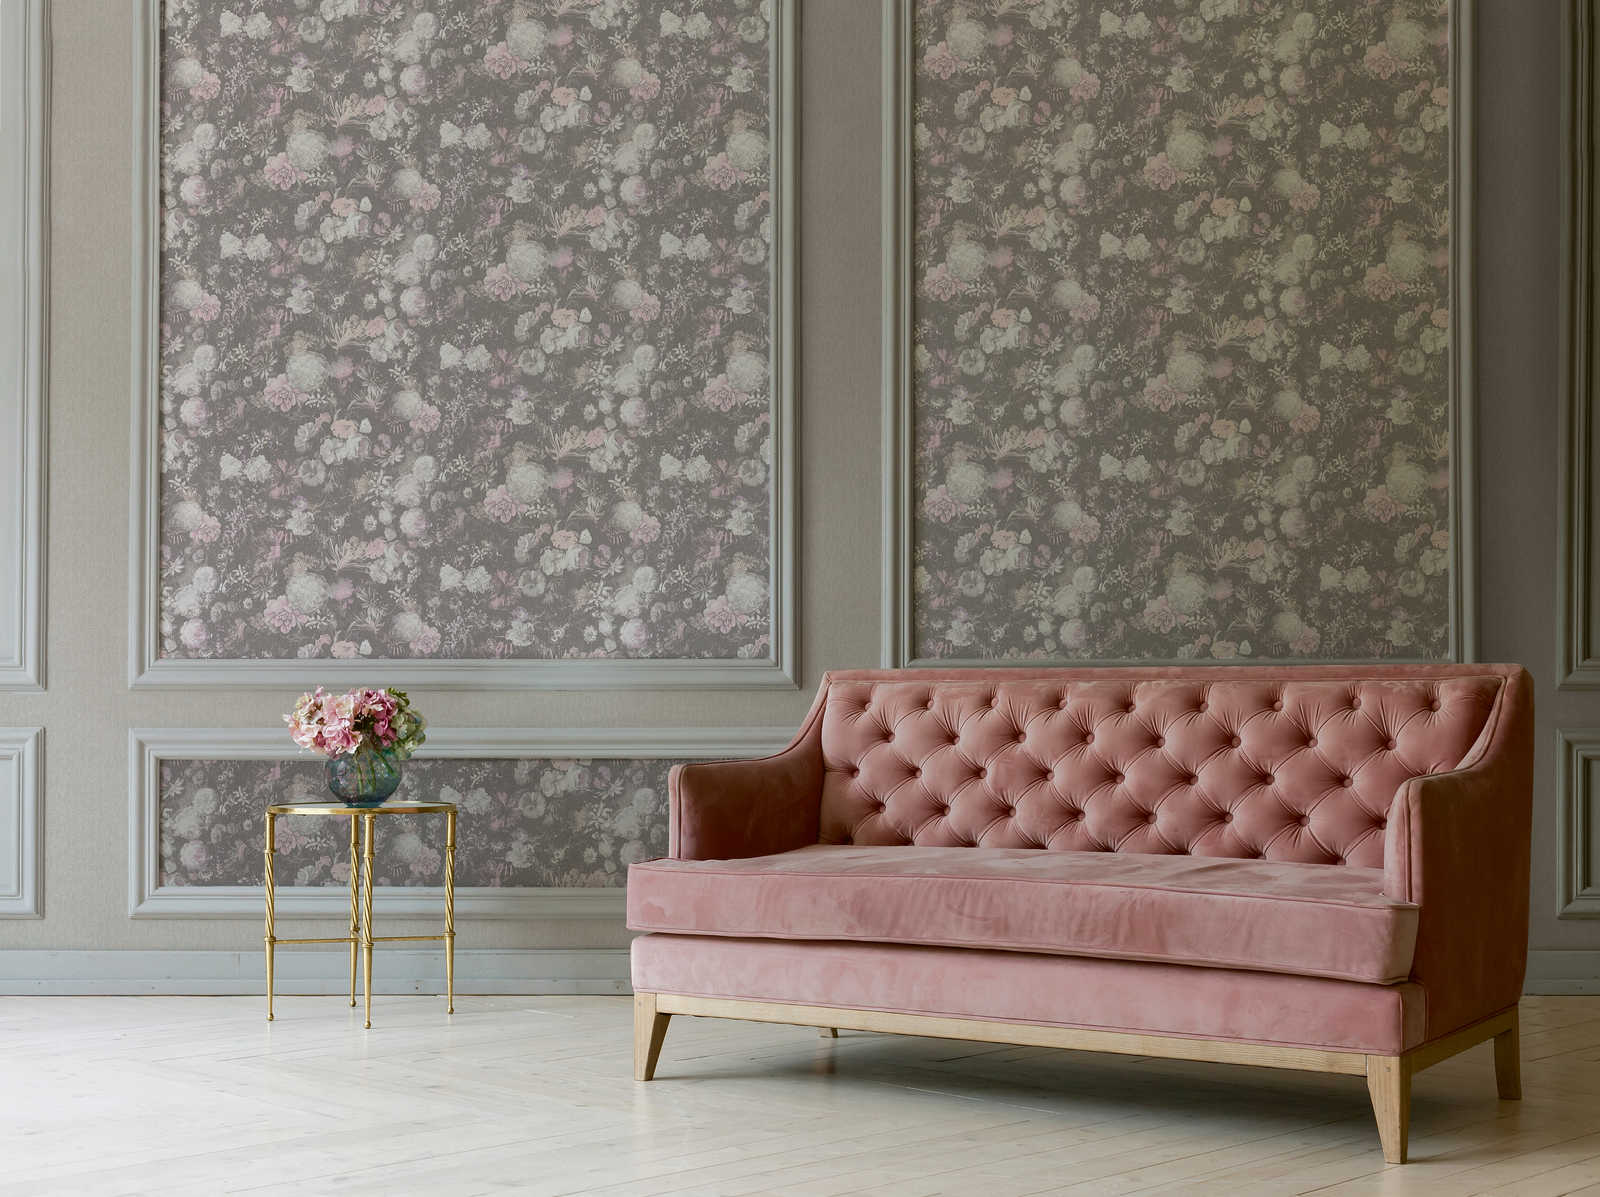             Papier peint fleuri rose et gris au design vintage
        